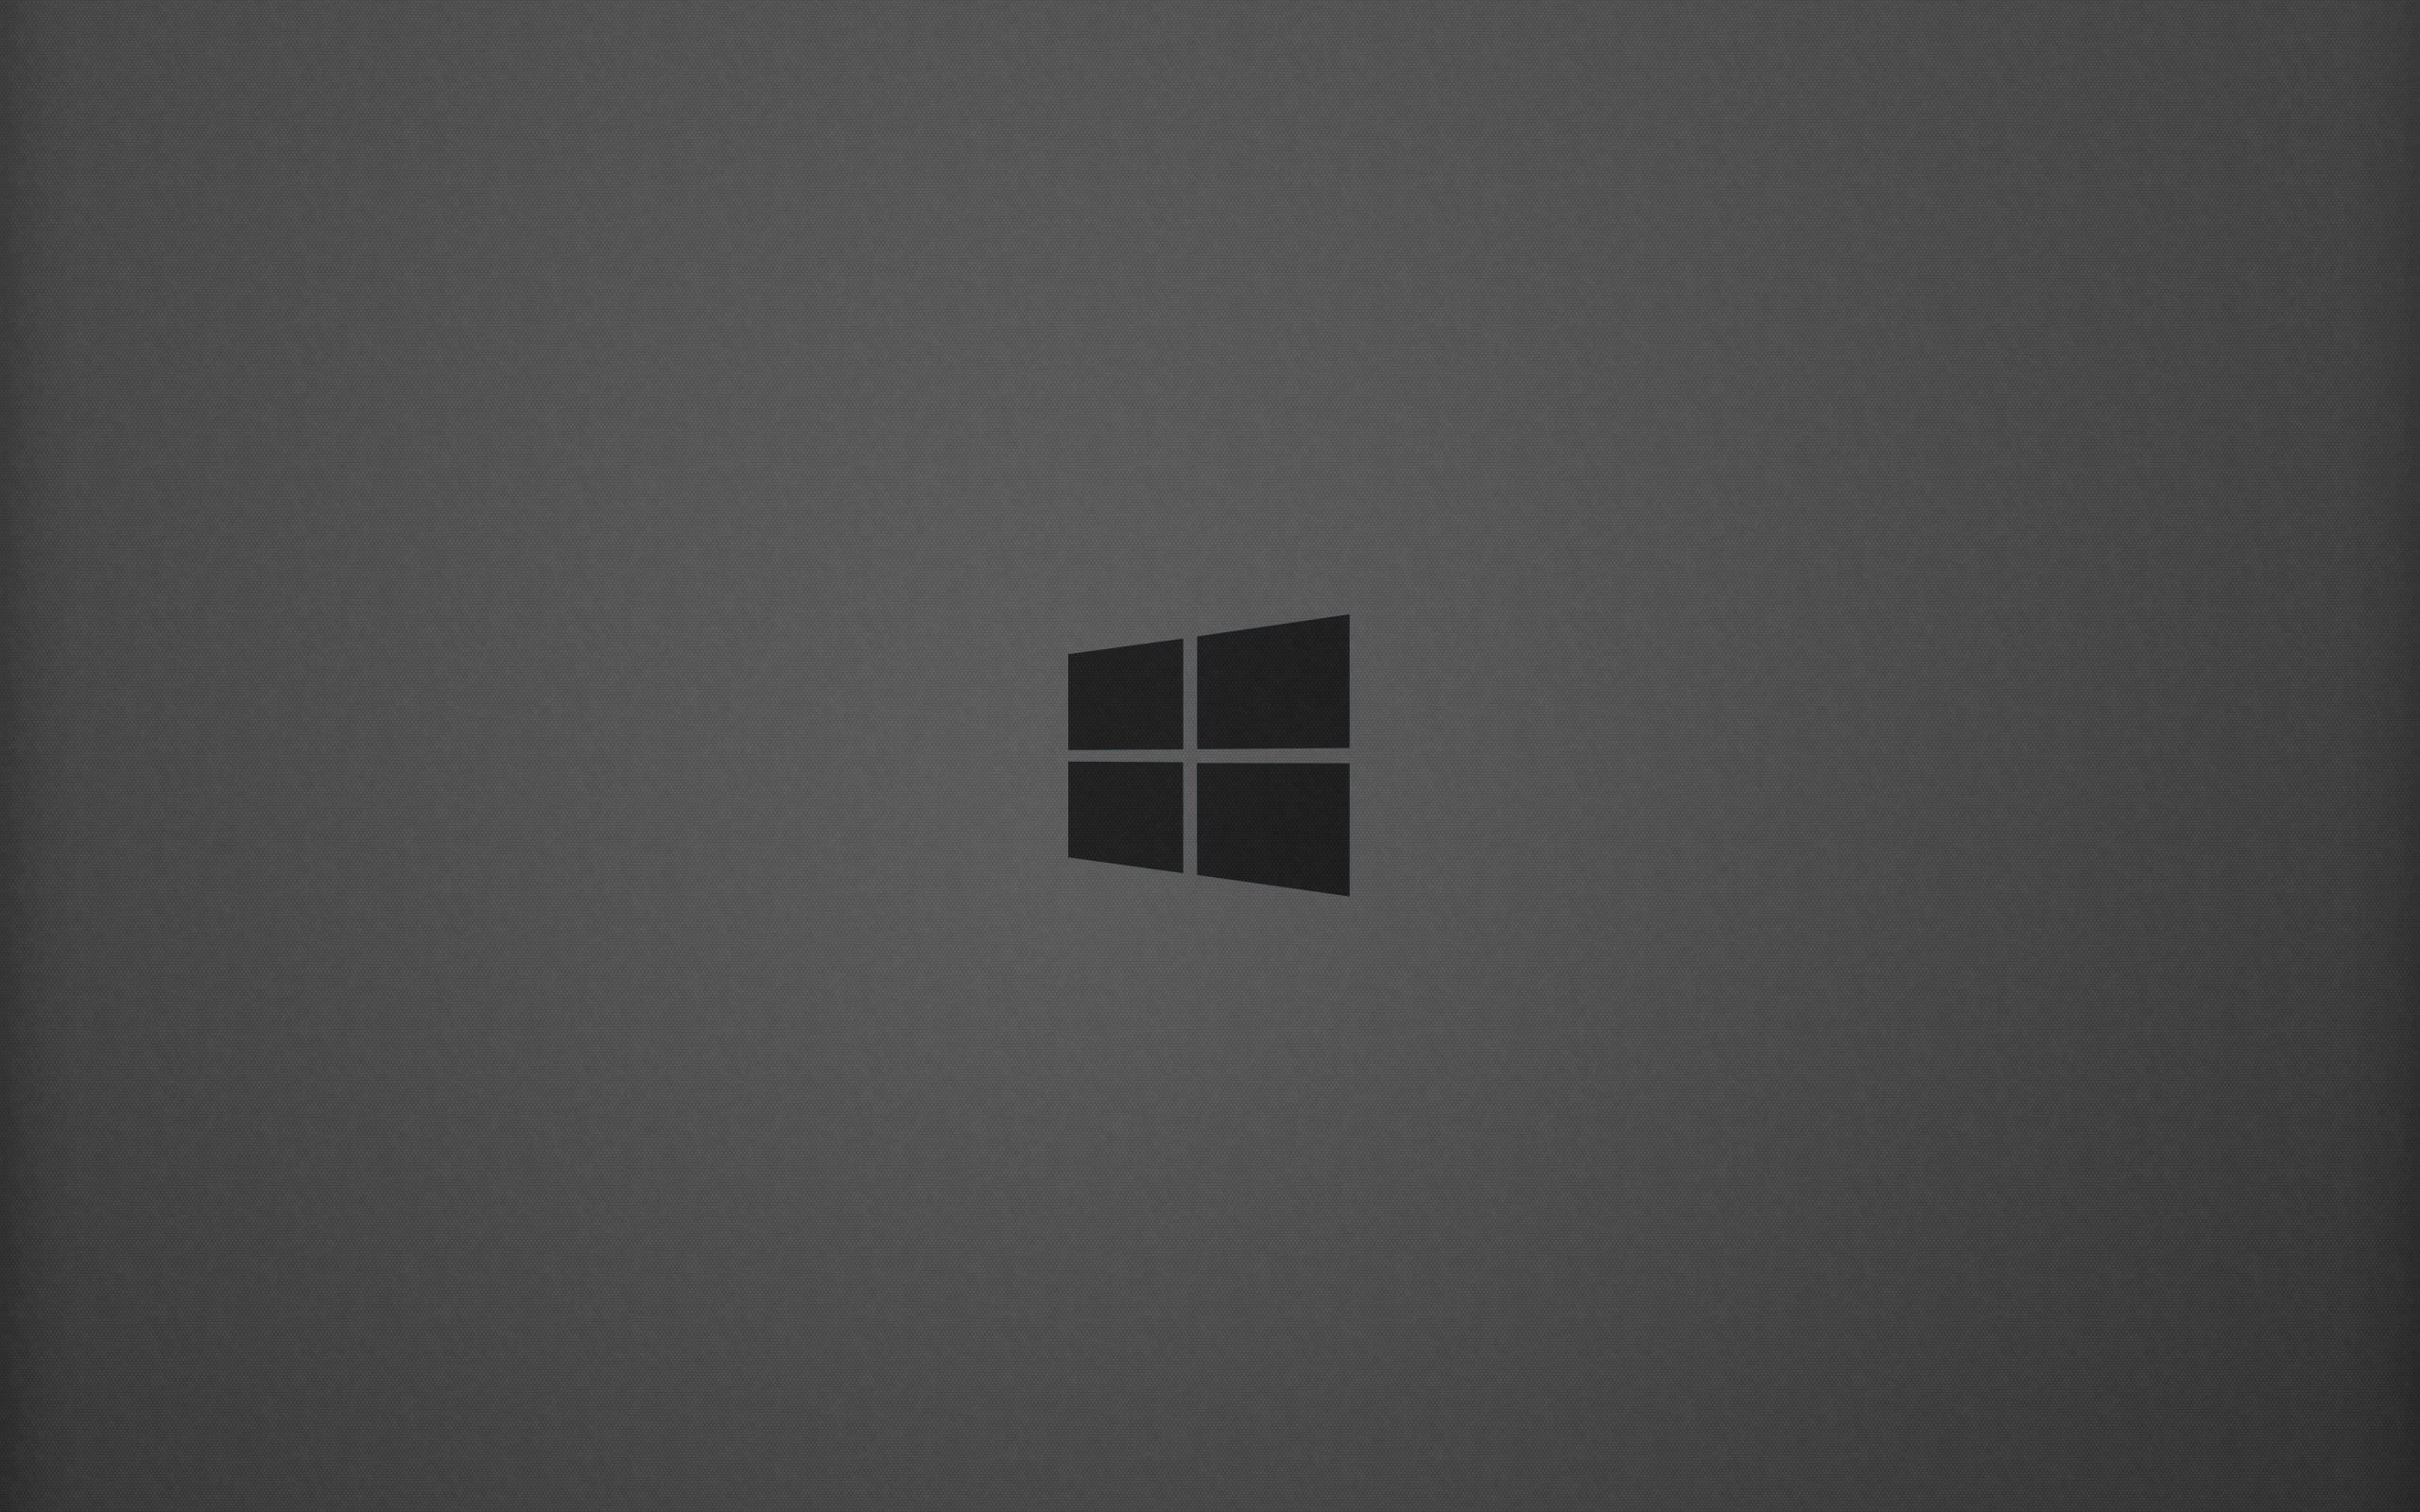 Windows Background Images